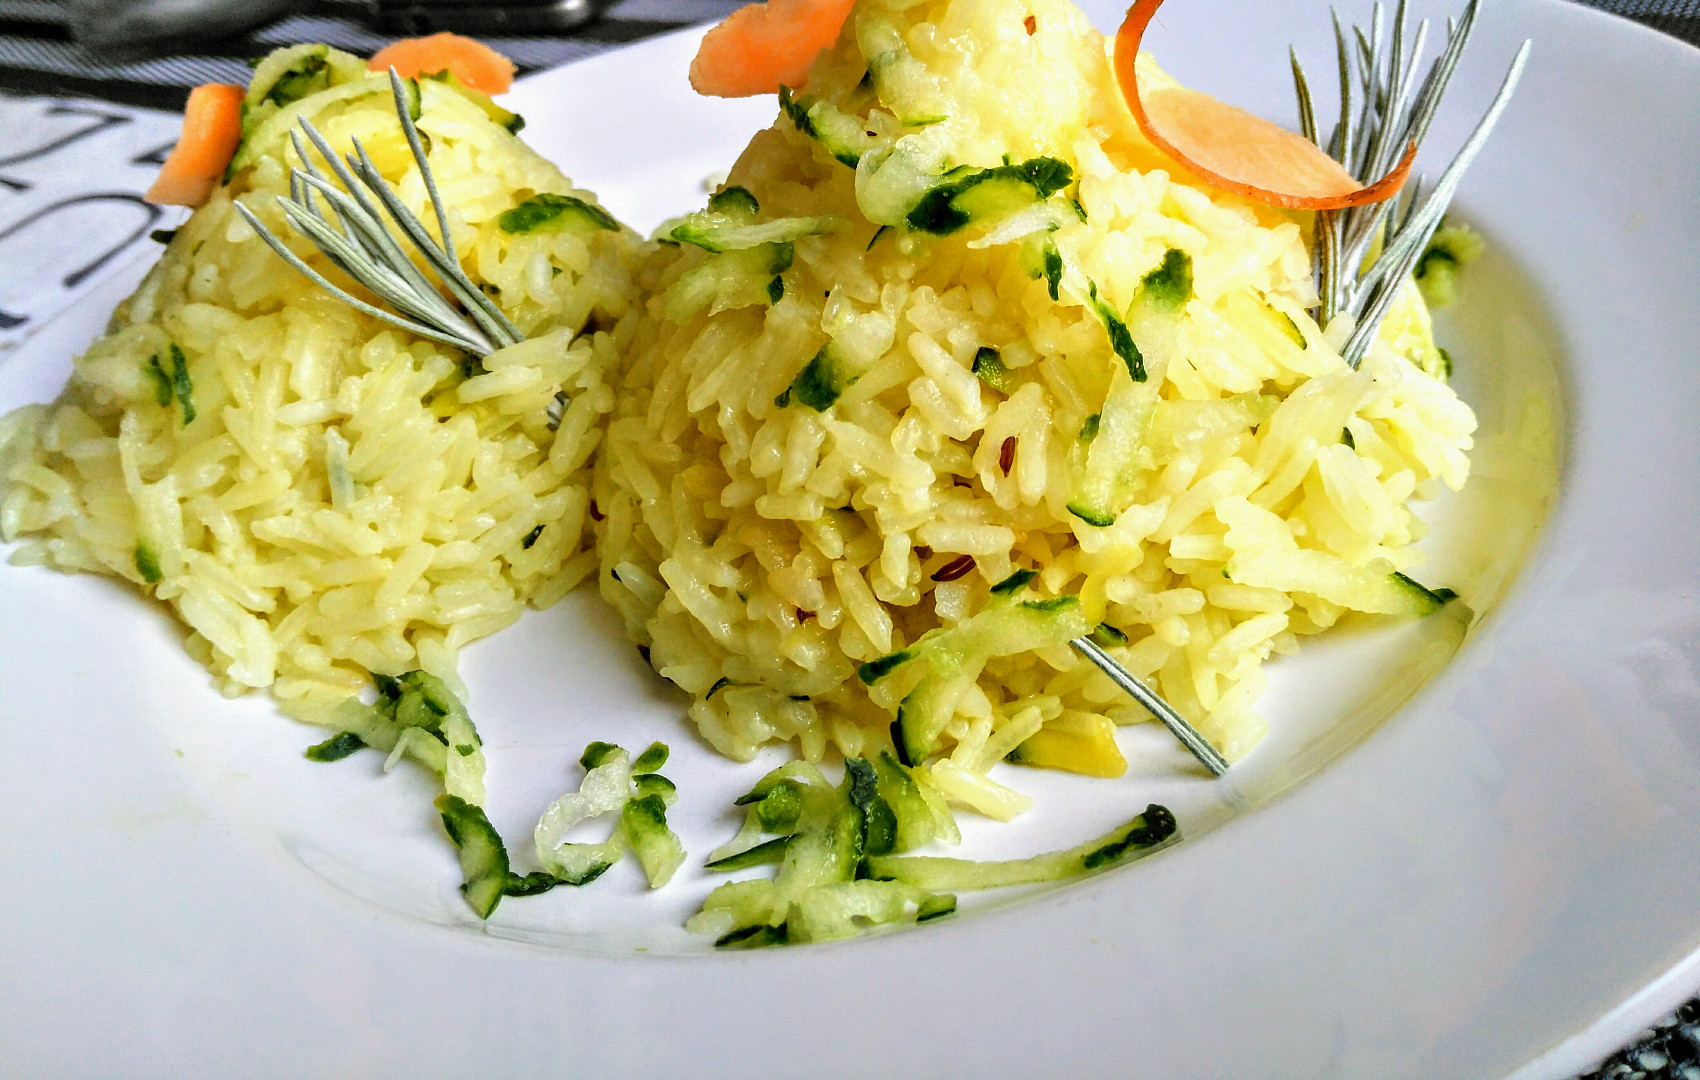 Cuketová rýže s mrkví